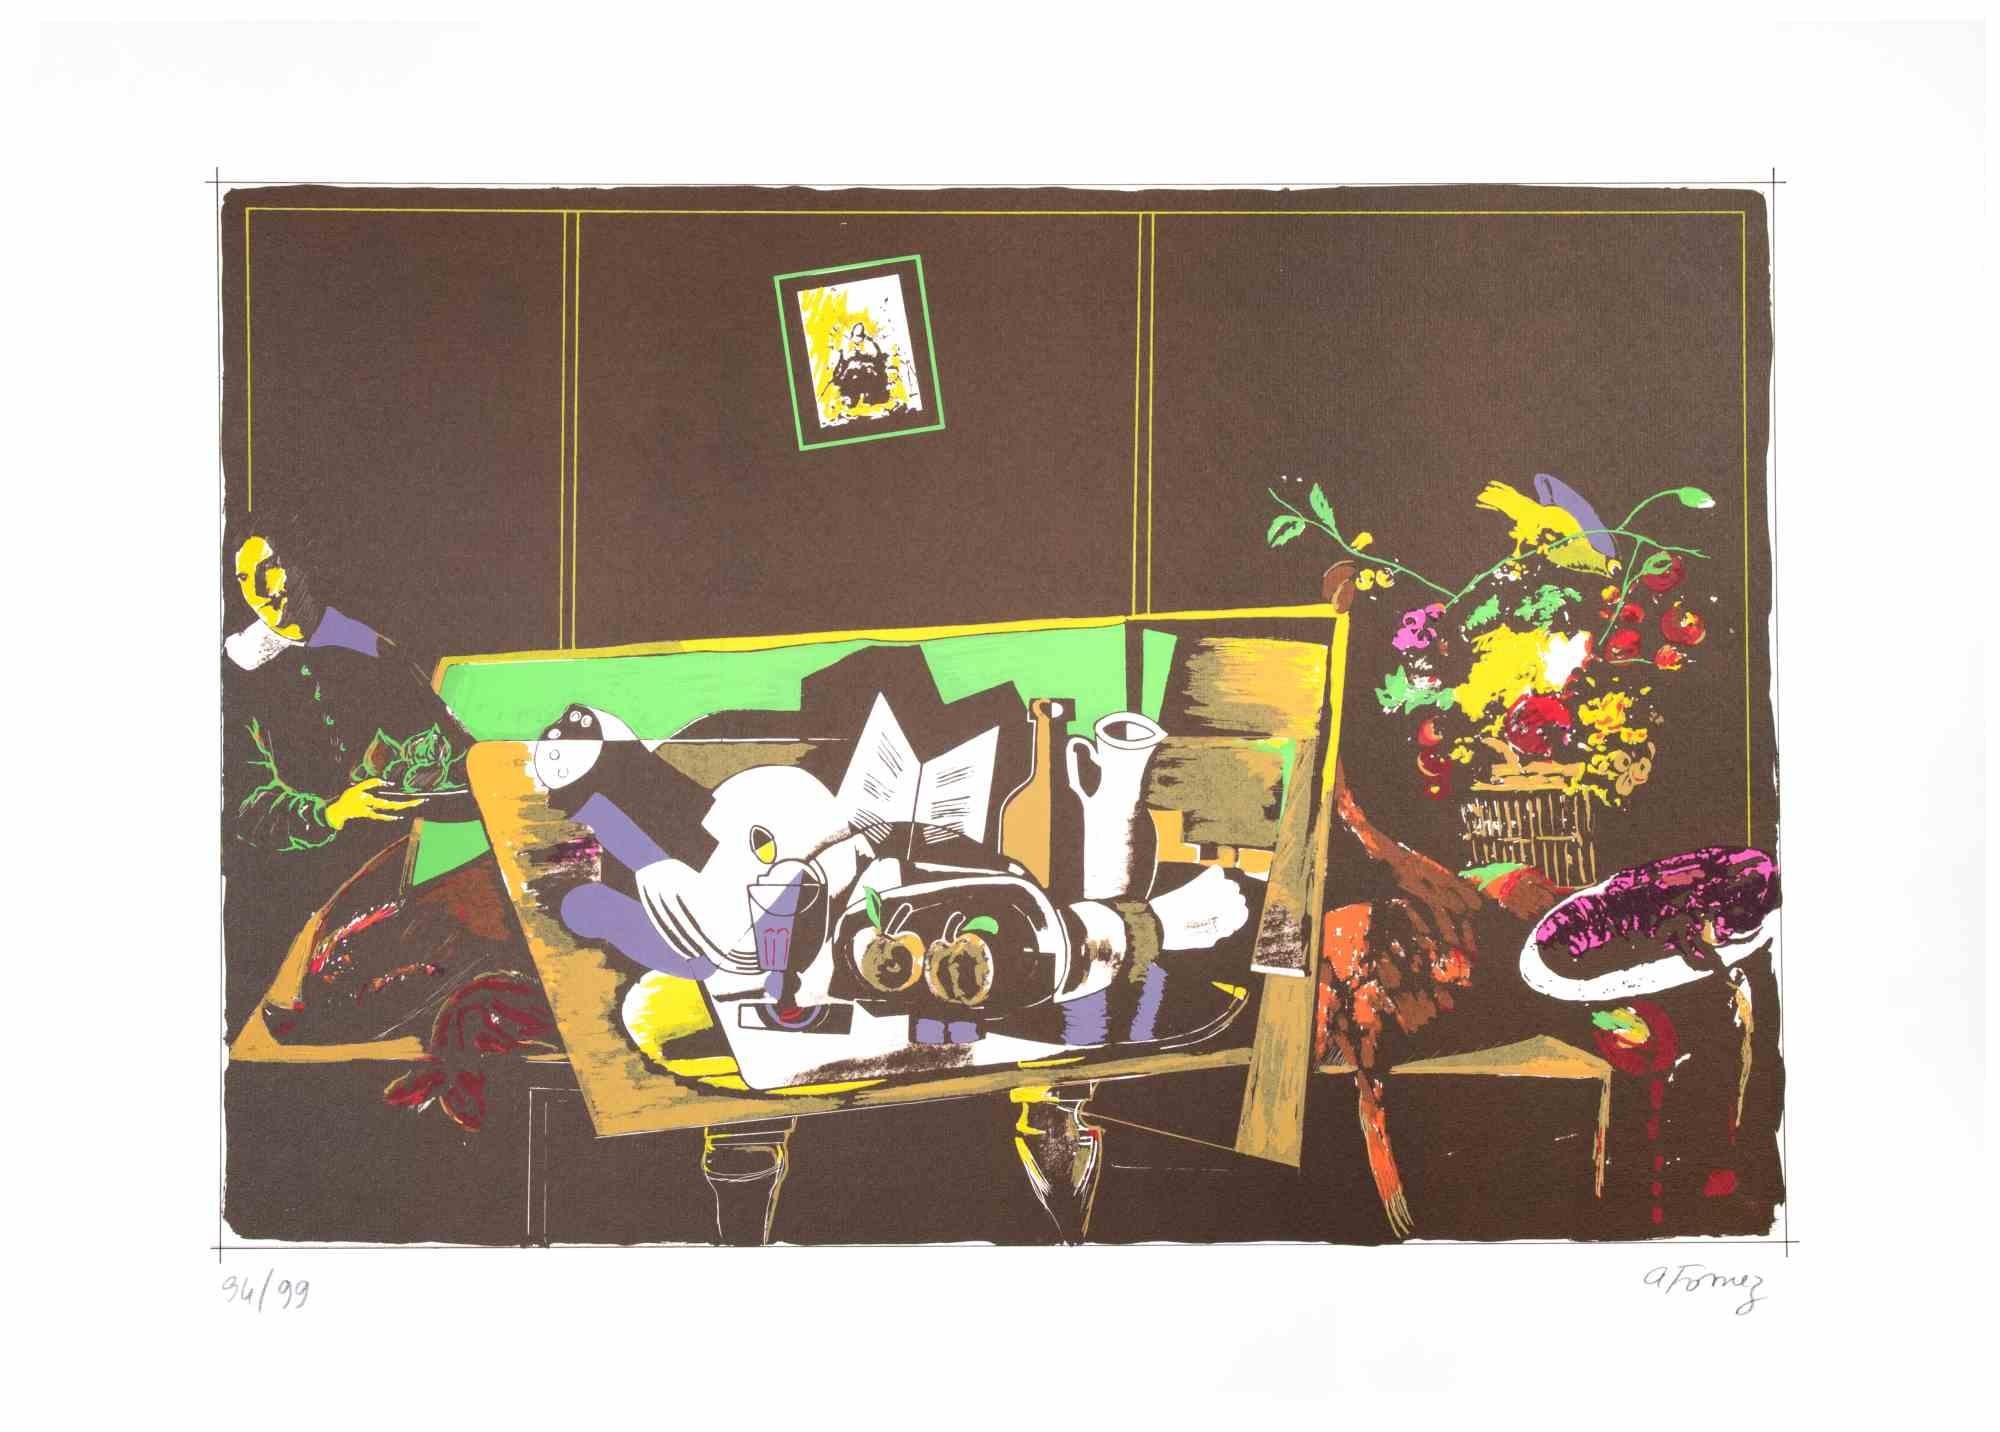 Still Life ist eine Farblithografie von Antonio Fomez aus den 1970er Jahren.

Rechts unten mit Bleistift handsigniert. Nummerierte Auflage von 99 Exemplaren, links unten mit Bleistift eingetragen.

Gute Bedingungen.

Ein Stillleben, das an die